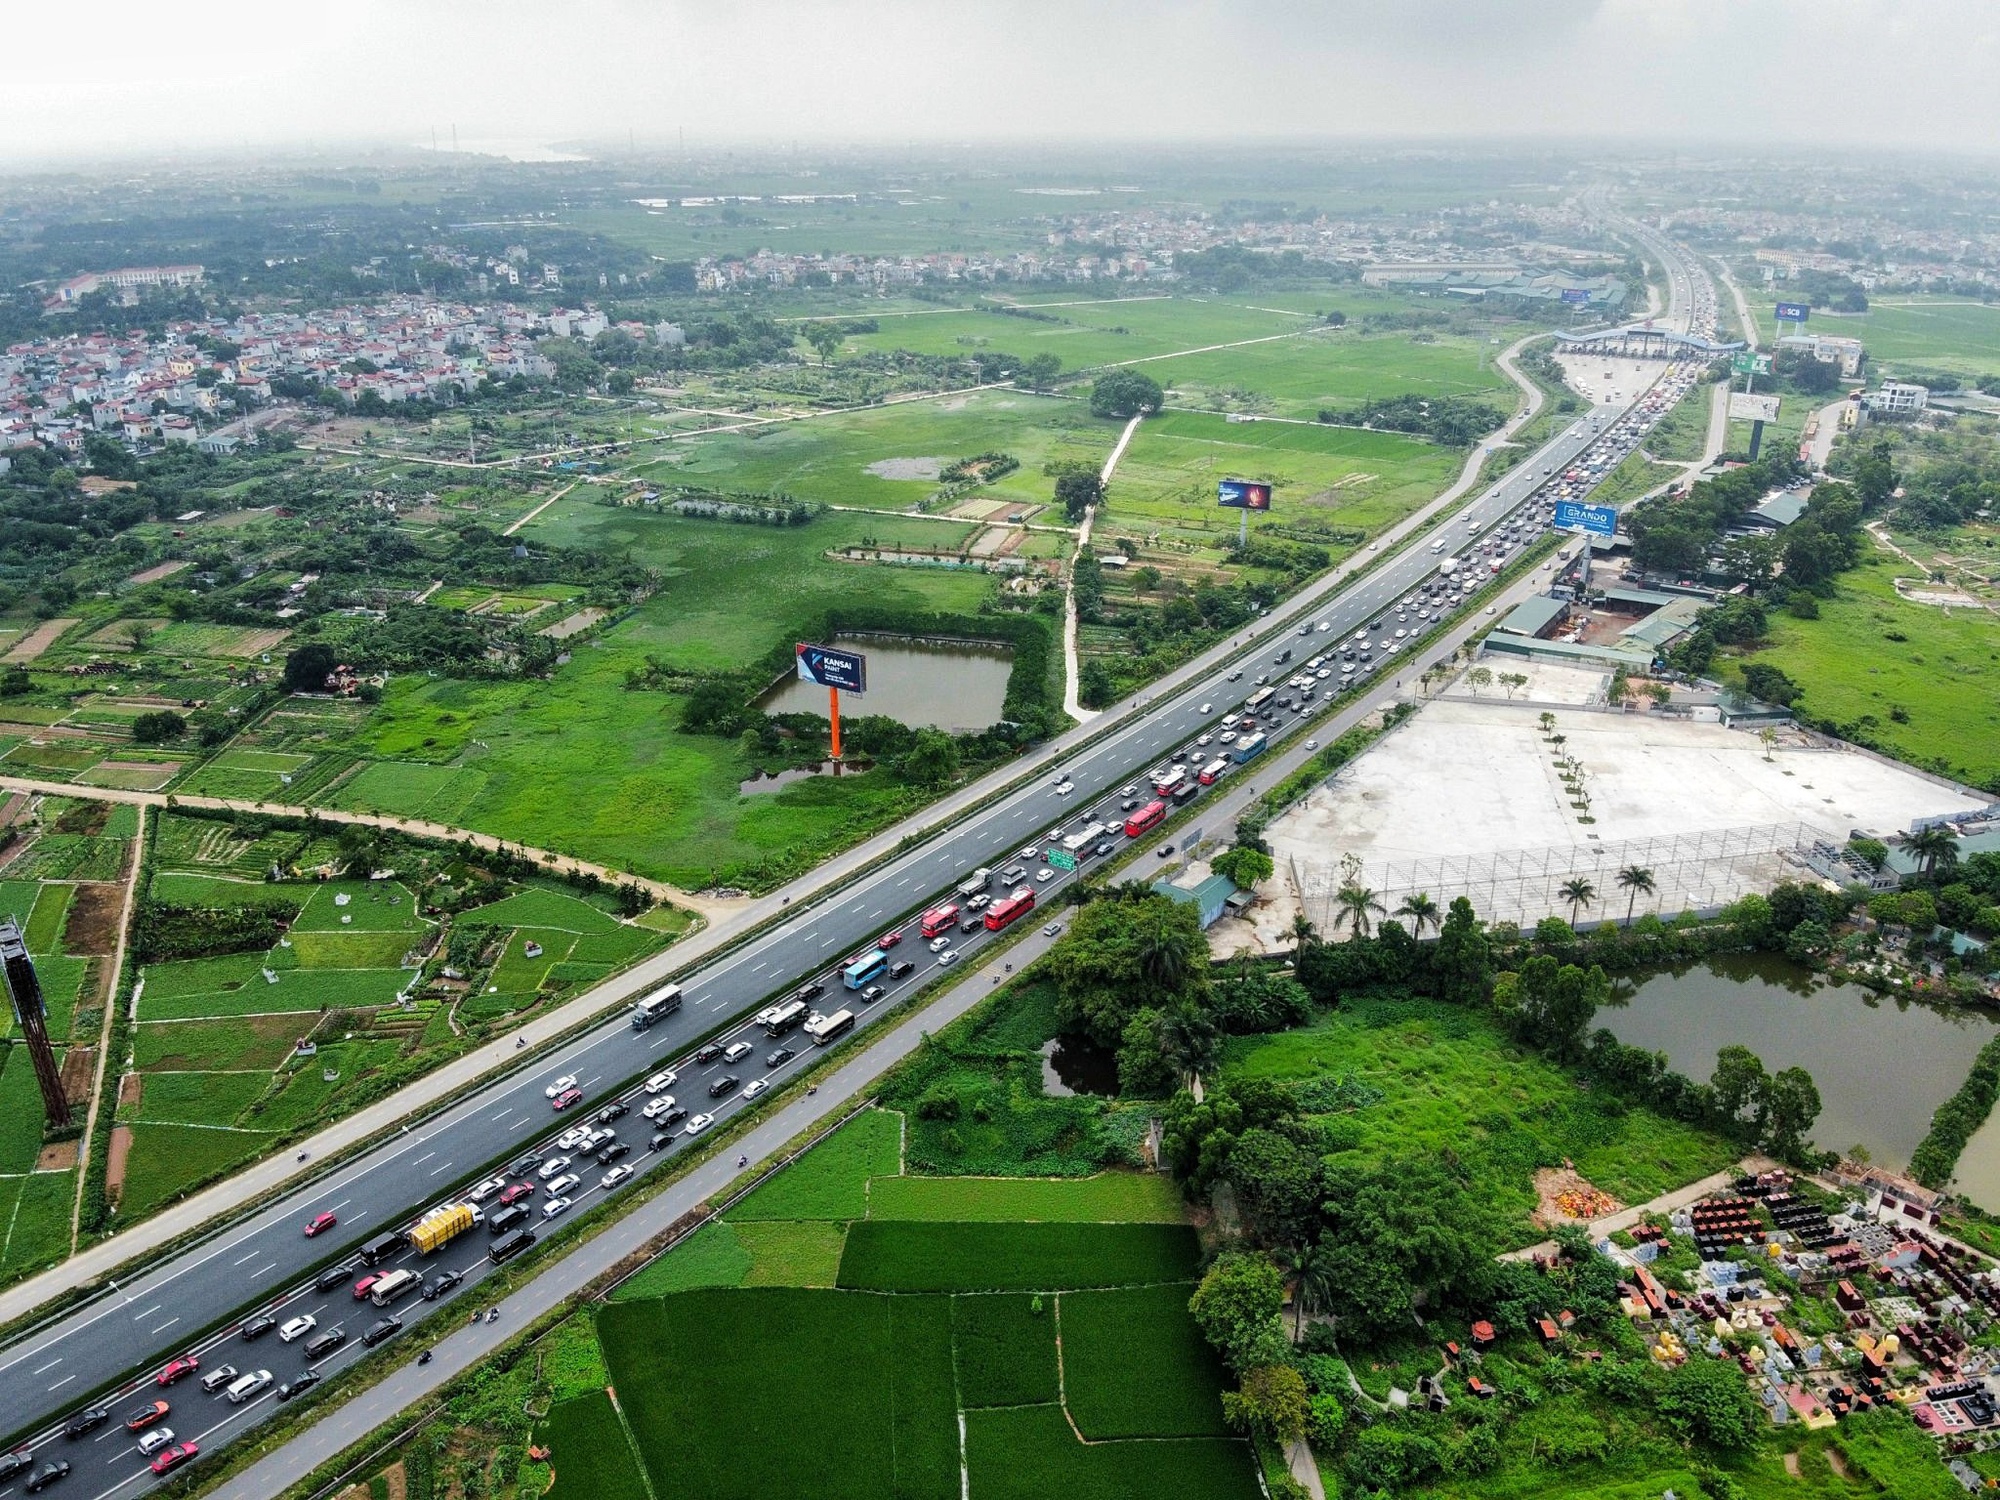 Số tiền cần nạp khi đi vào các tuyến cao tốc tại Việt Nam - Ảnh 3.